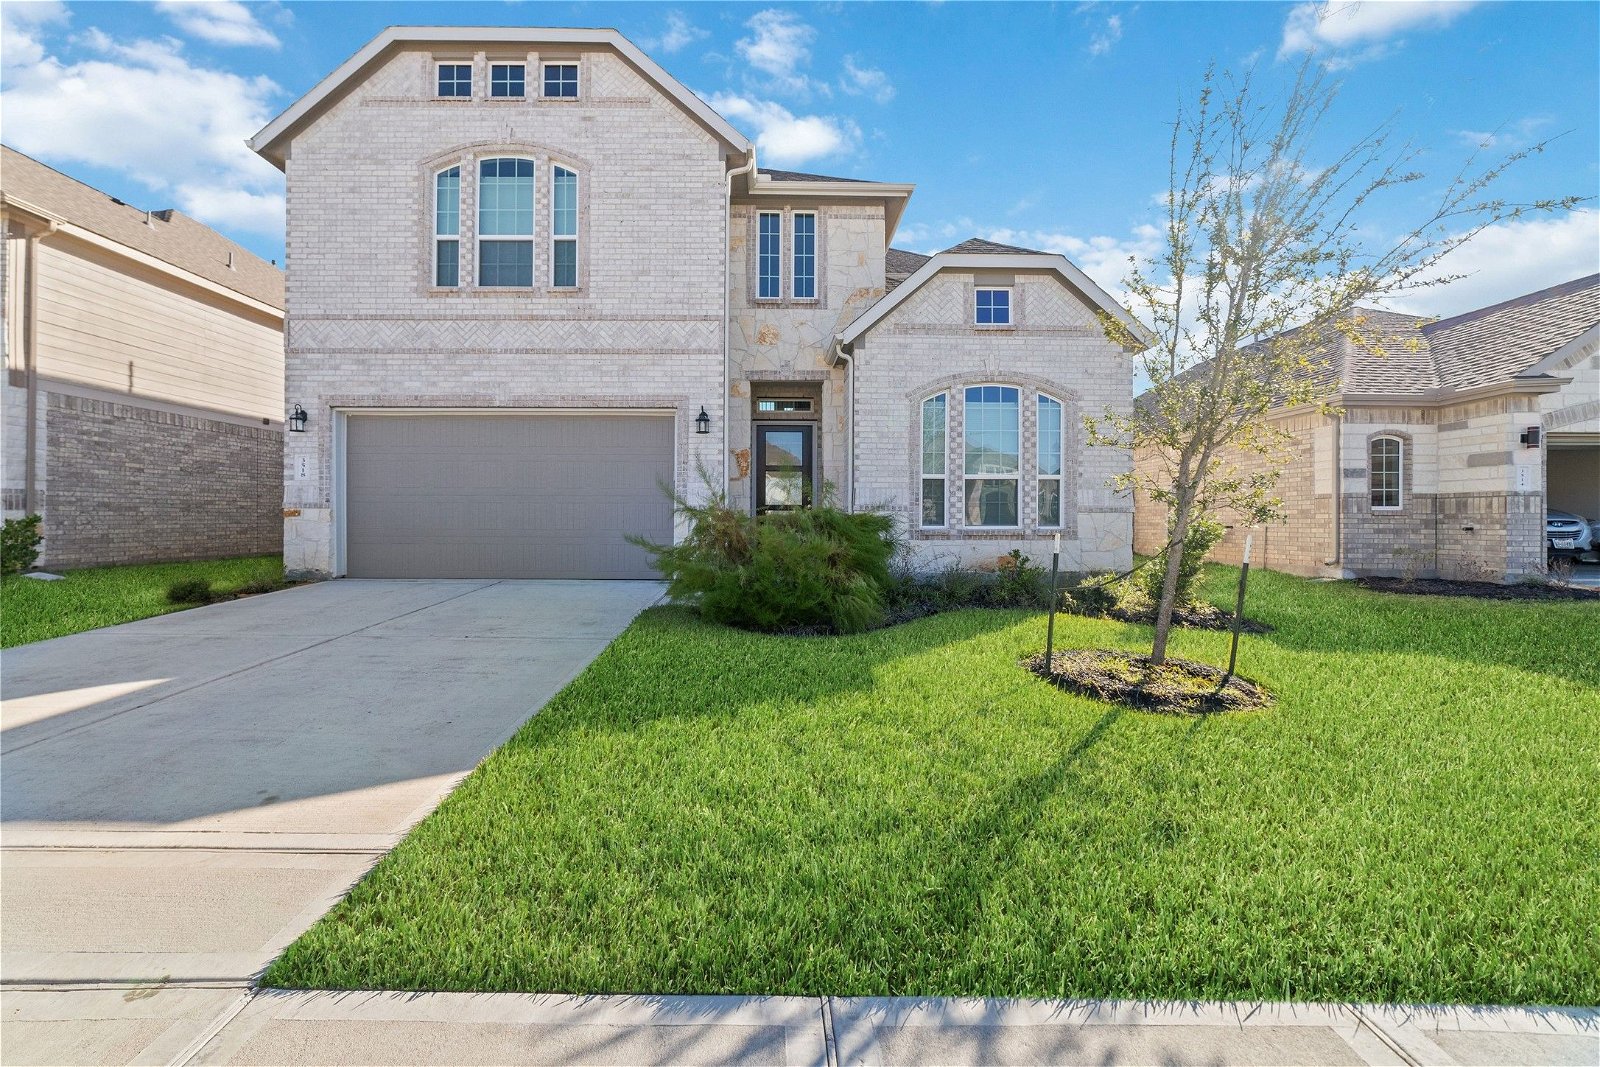 Real estate property located at 3518 Lake Varano, Harris, Katy, TX, US